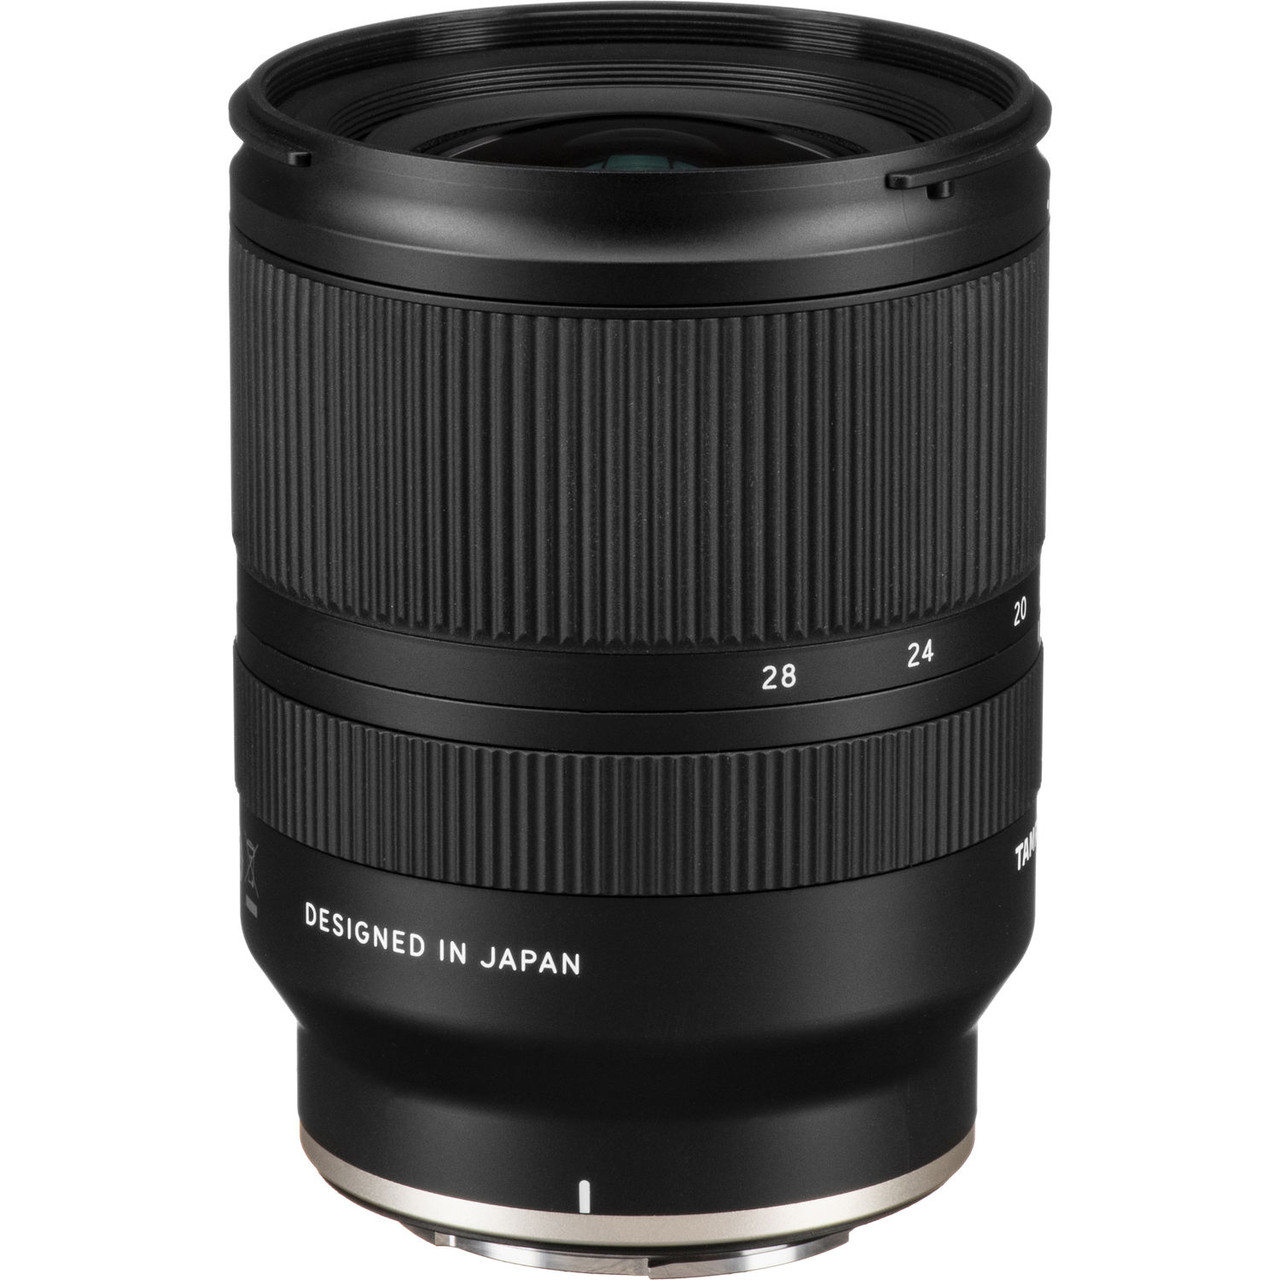 感謝価格 Sigma 14-24mm F2.8 DG HSM Art Lens for Canon Hard Drive Bundle Items 